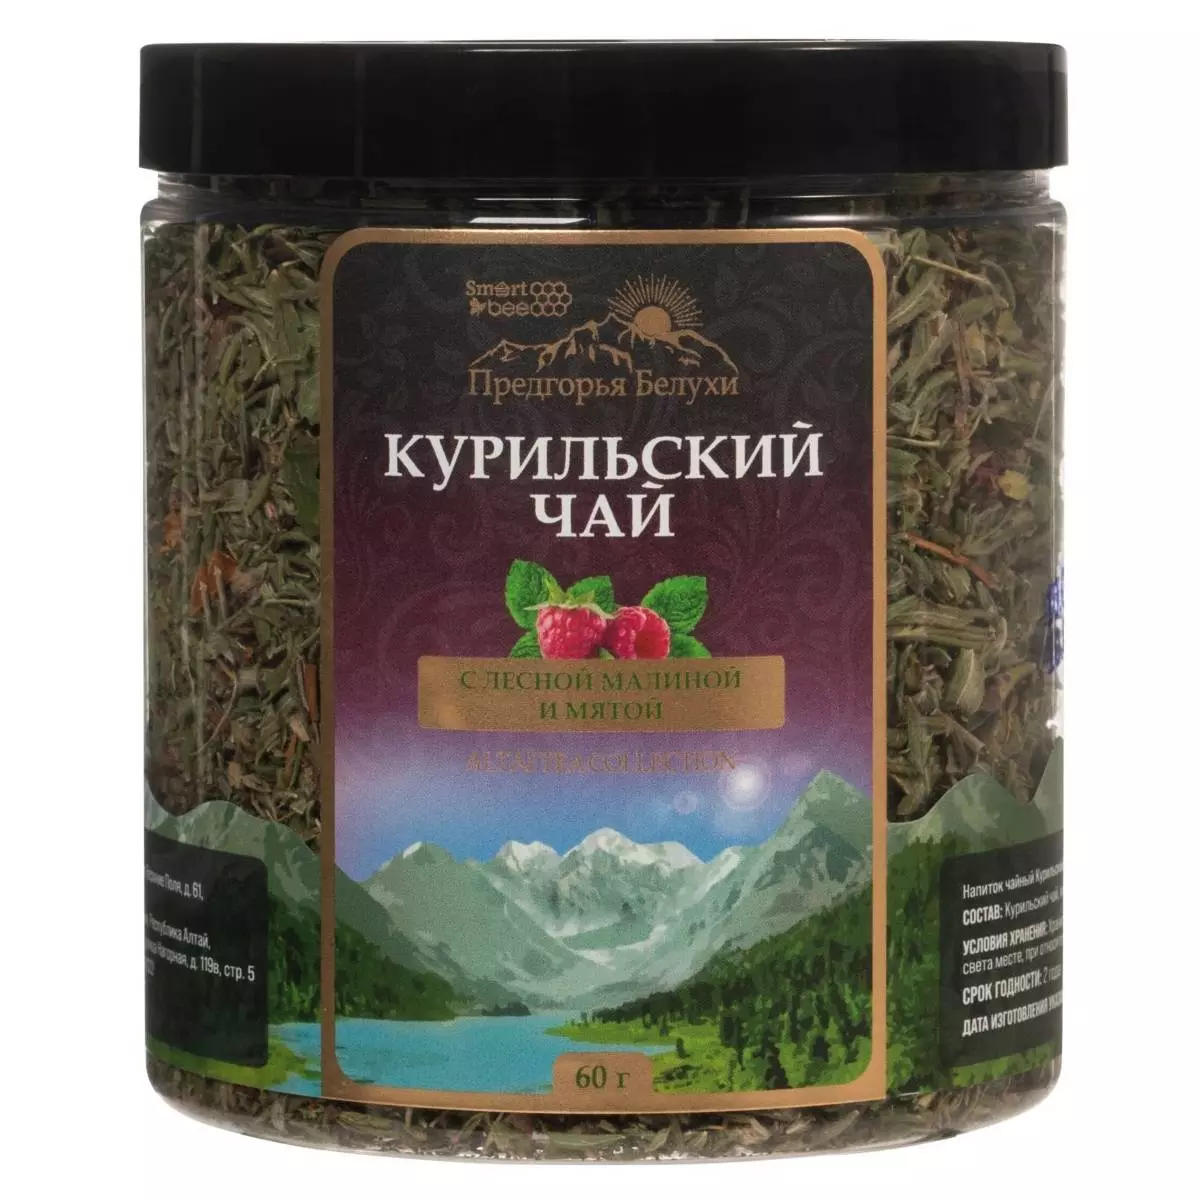 Купить Курильский черный чай с лесной малиной и мятой, 60 г, Предгорья Белухи (Россия)